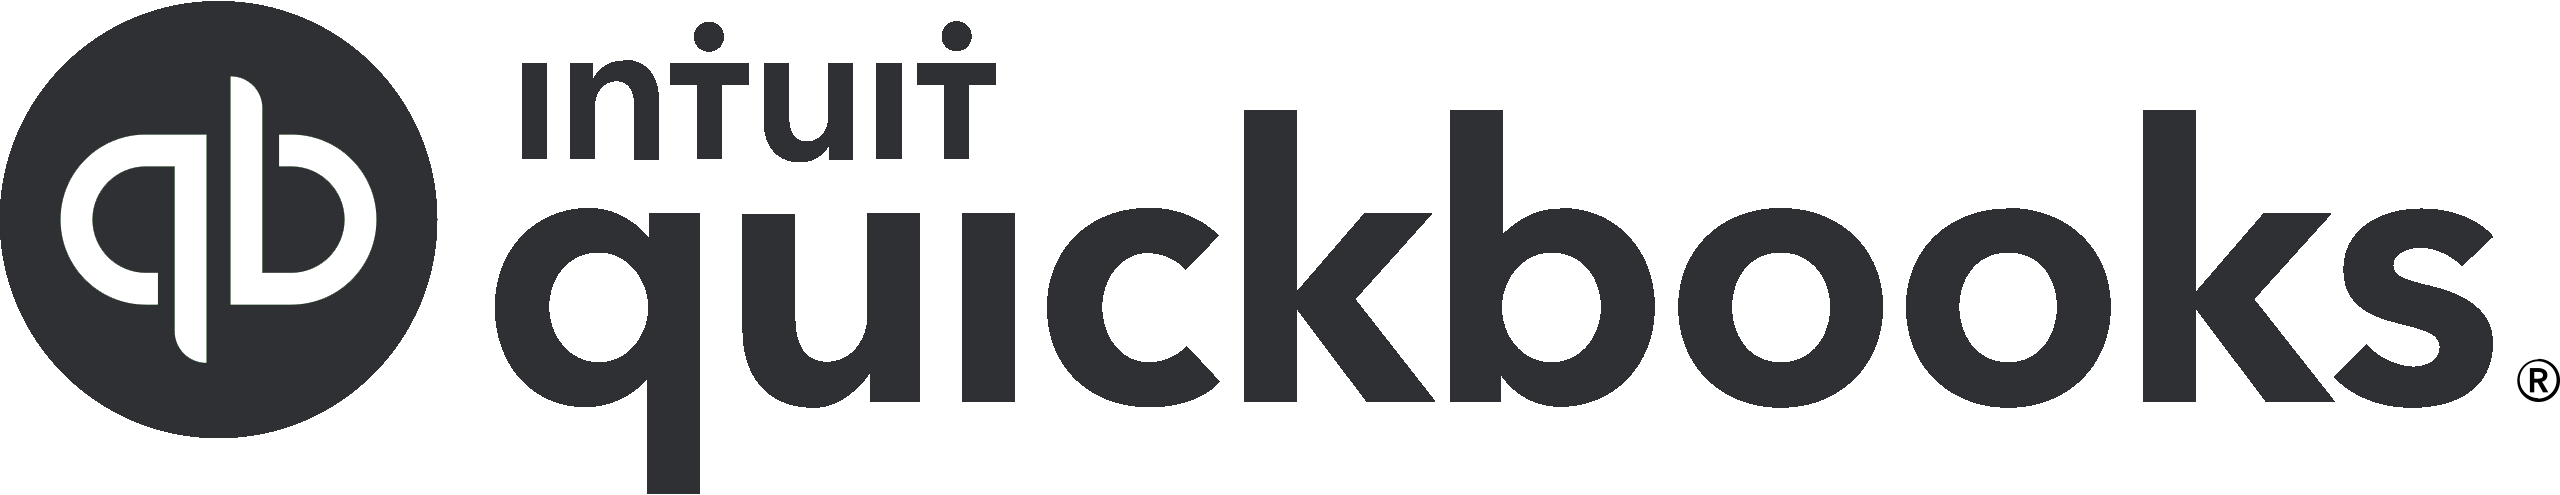 Intuit_QuickBooks_logo.svg